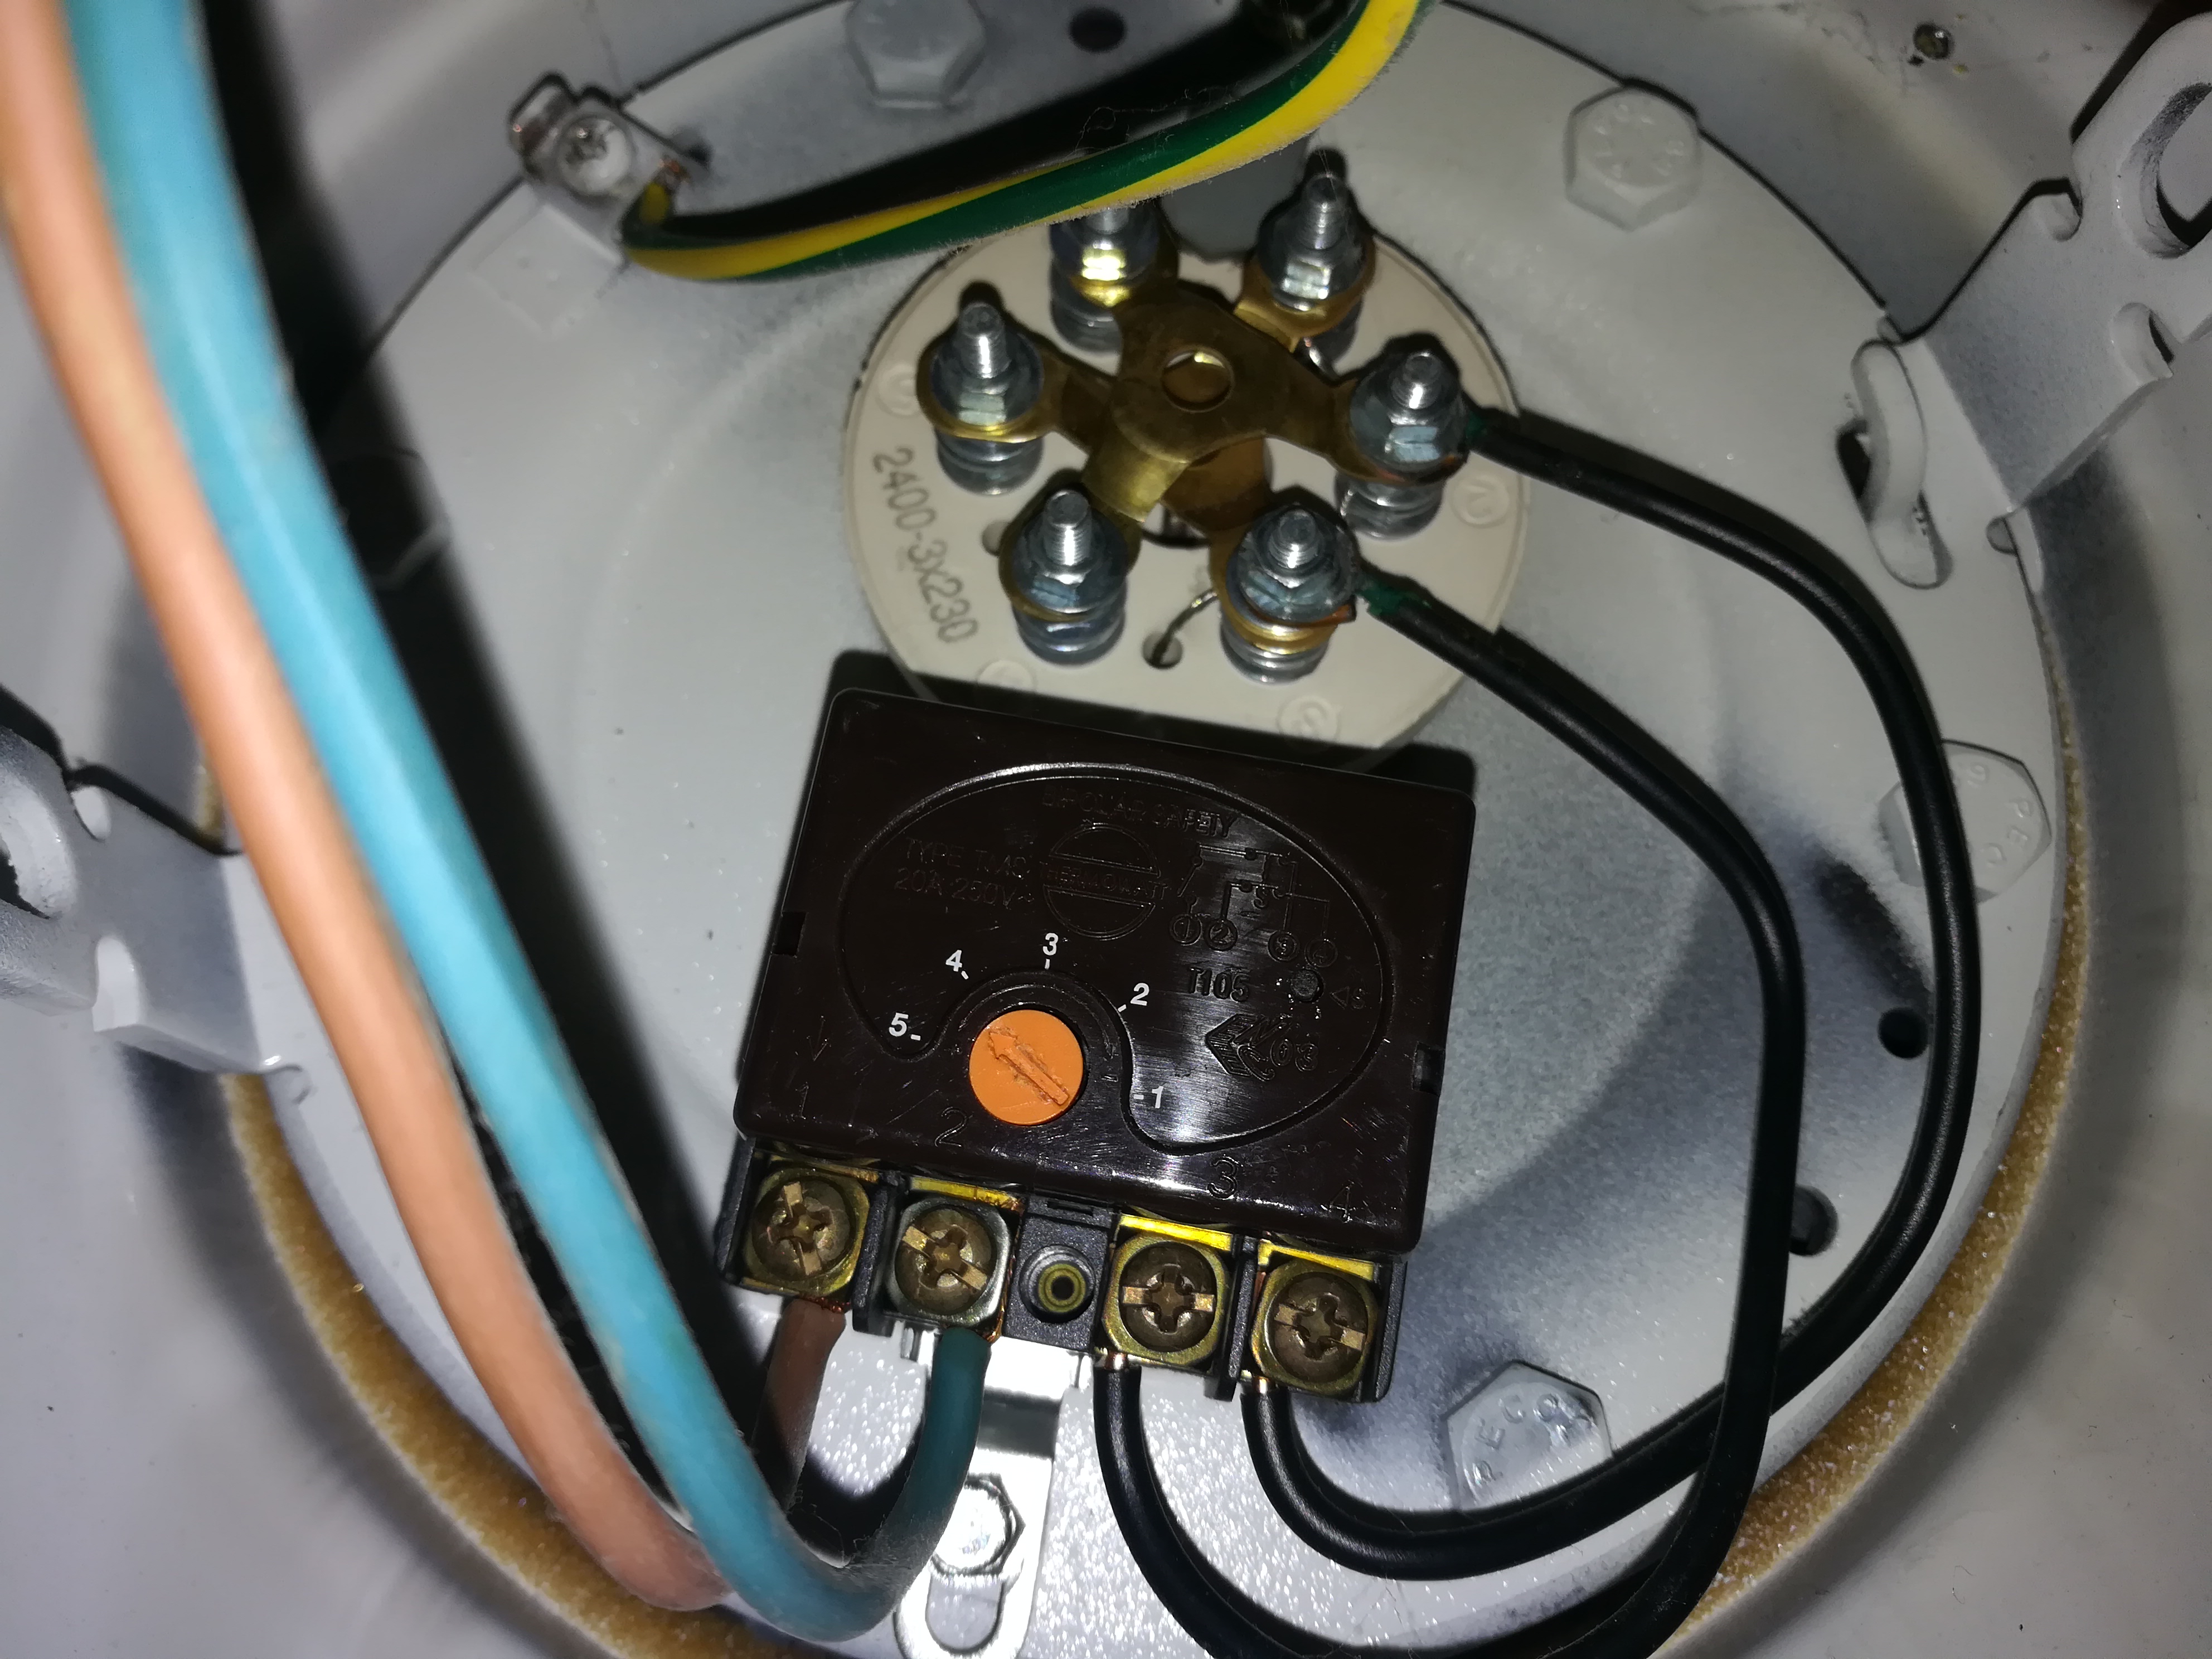 Comment réarmer ce type de thermostat?